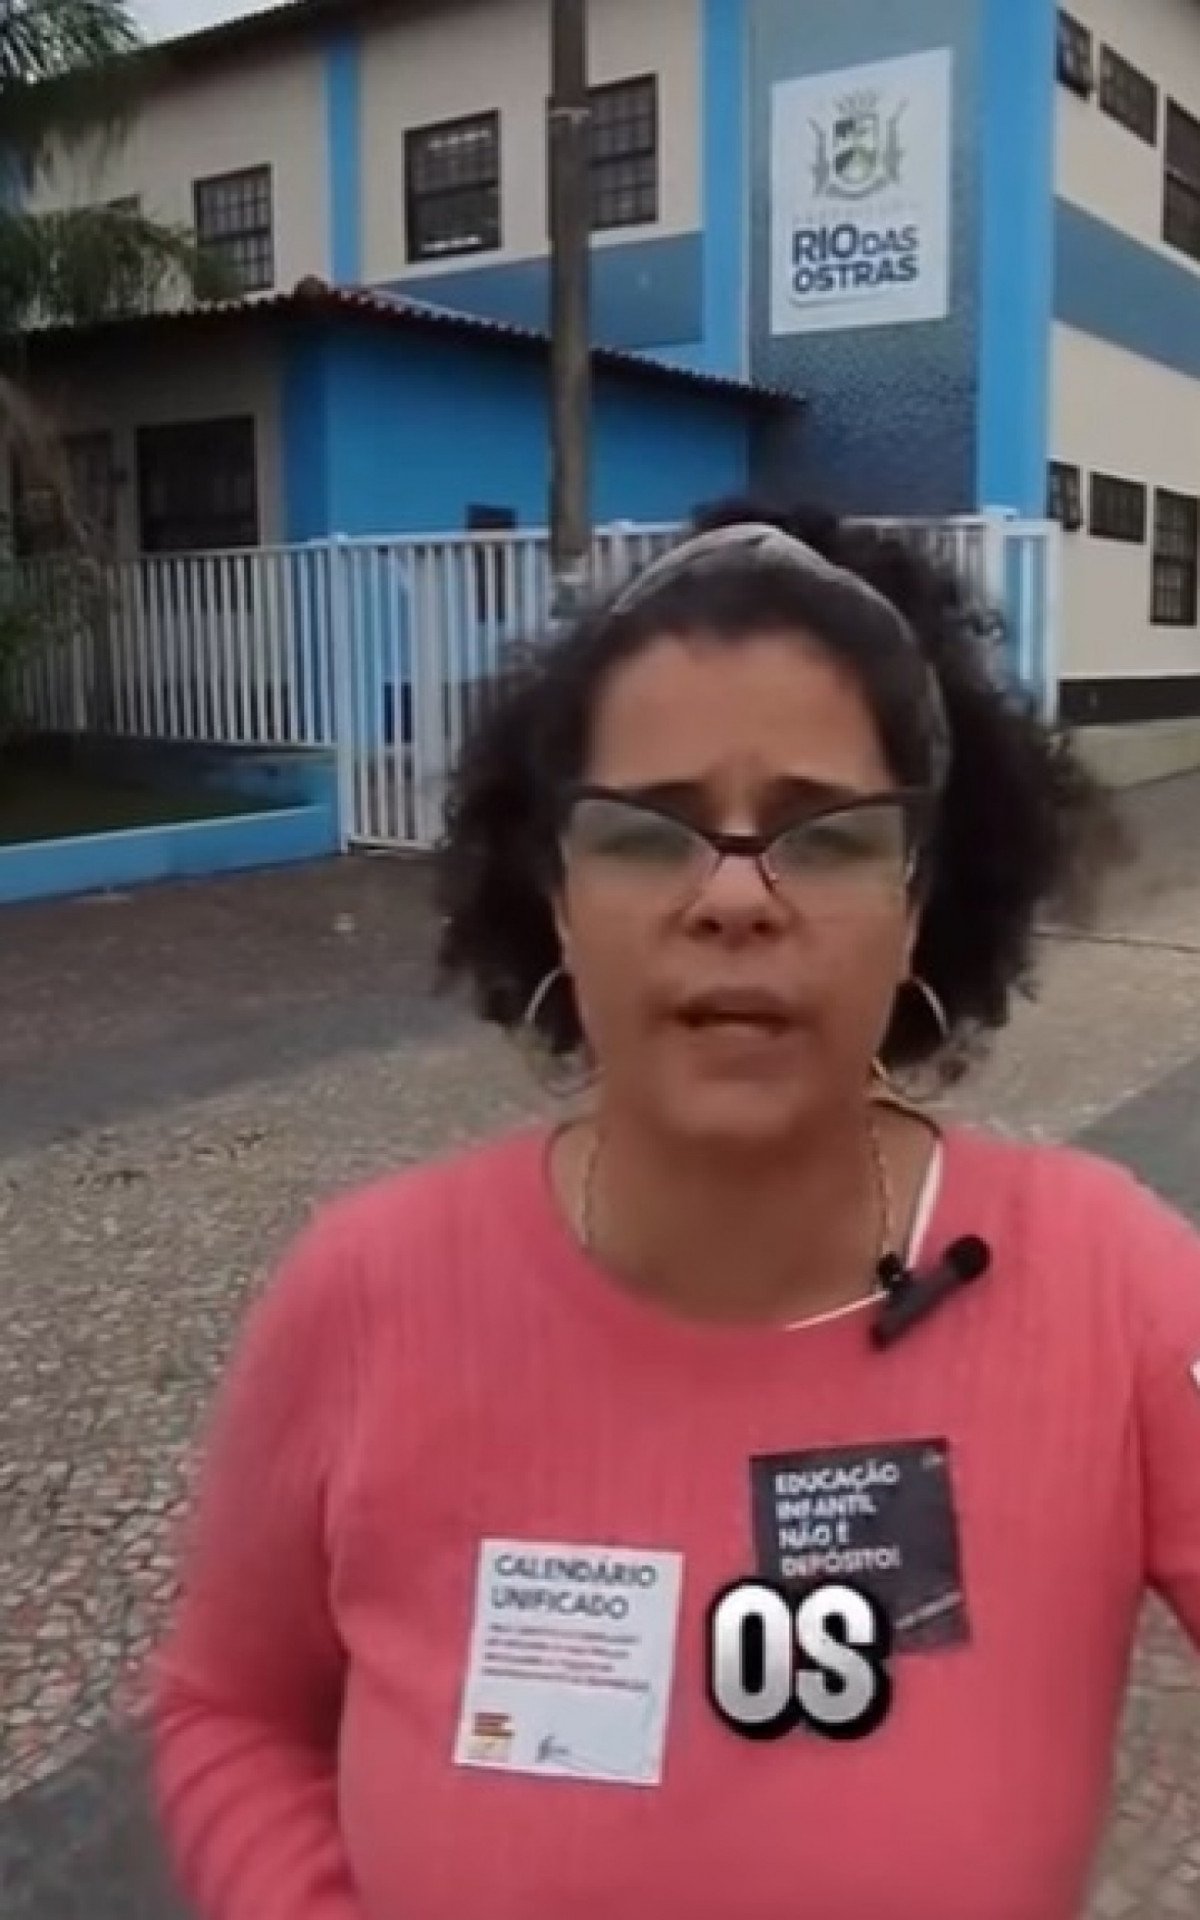 Impasse entre prefeitura e educadores em Rio das Ostras: Diálogo estagnado | Rio das Ostras